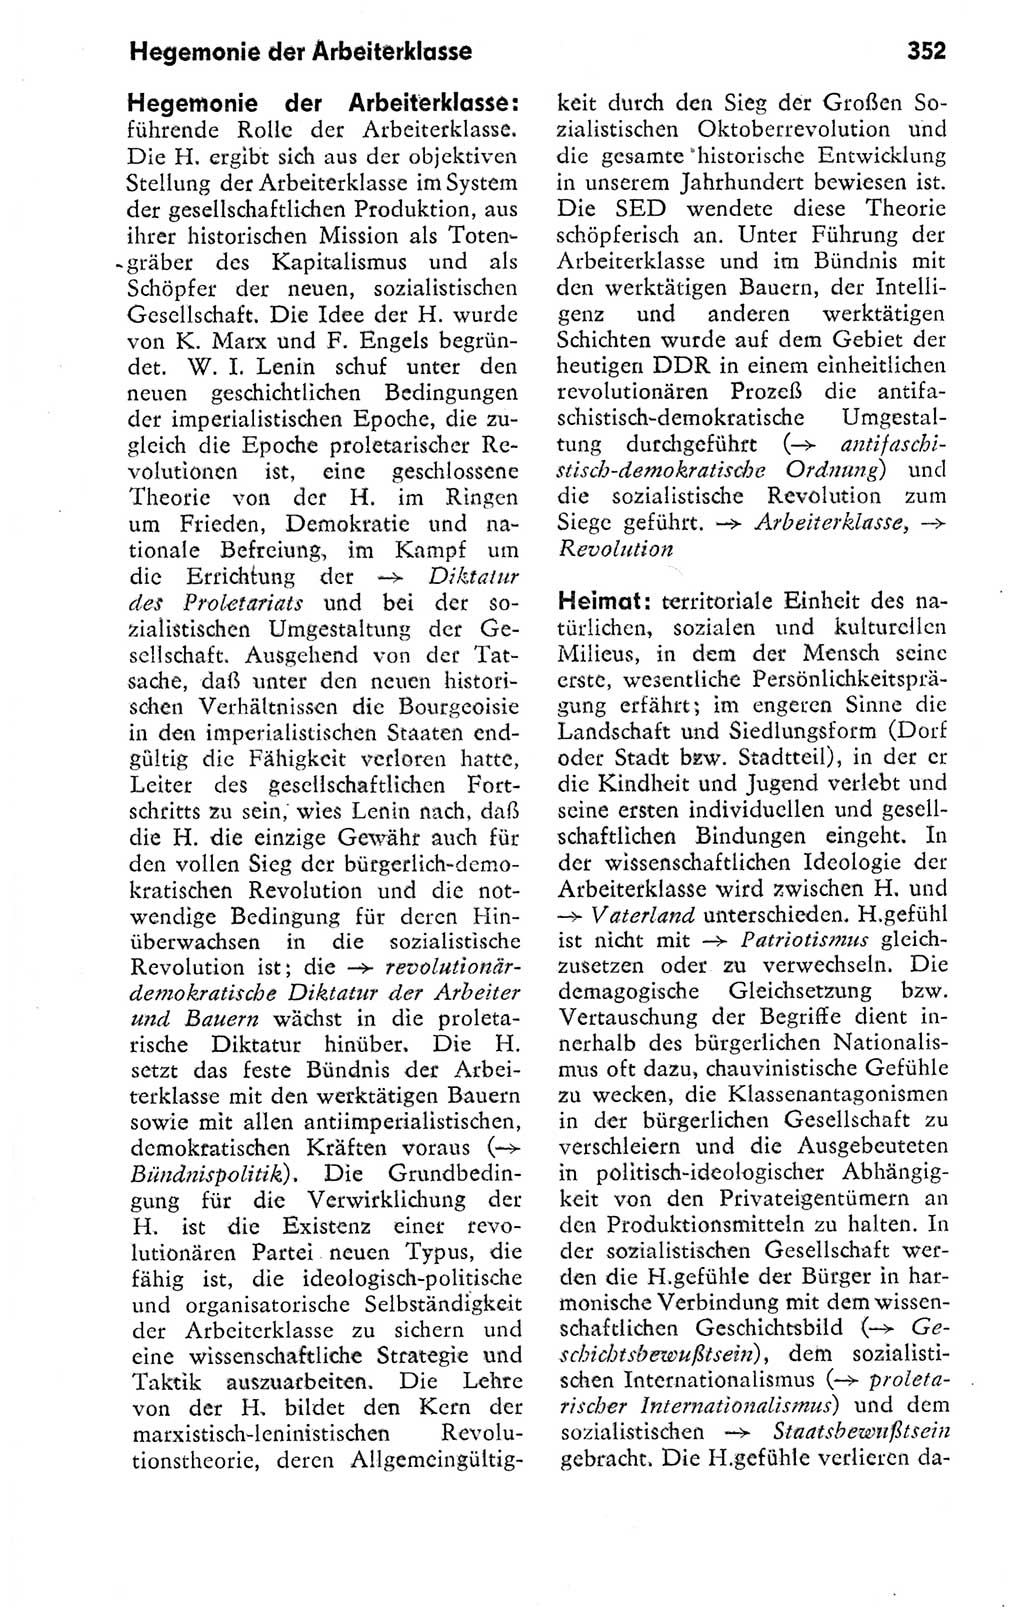 Kleines politisches Wörterbuch [Deutsche Demokratische Republik (DDR)] 1978, Seite 352 (Kl. pol. Wb. DDR 1978, S. 352)